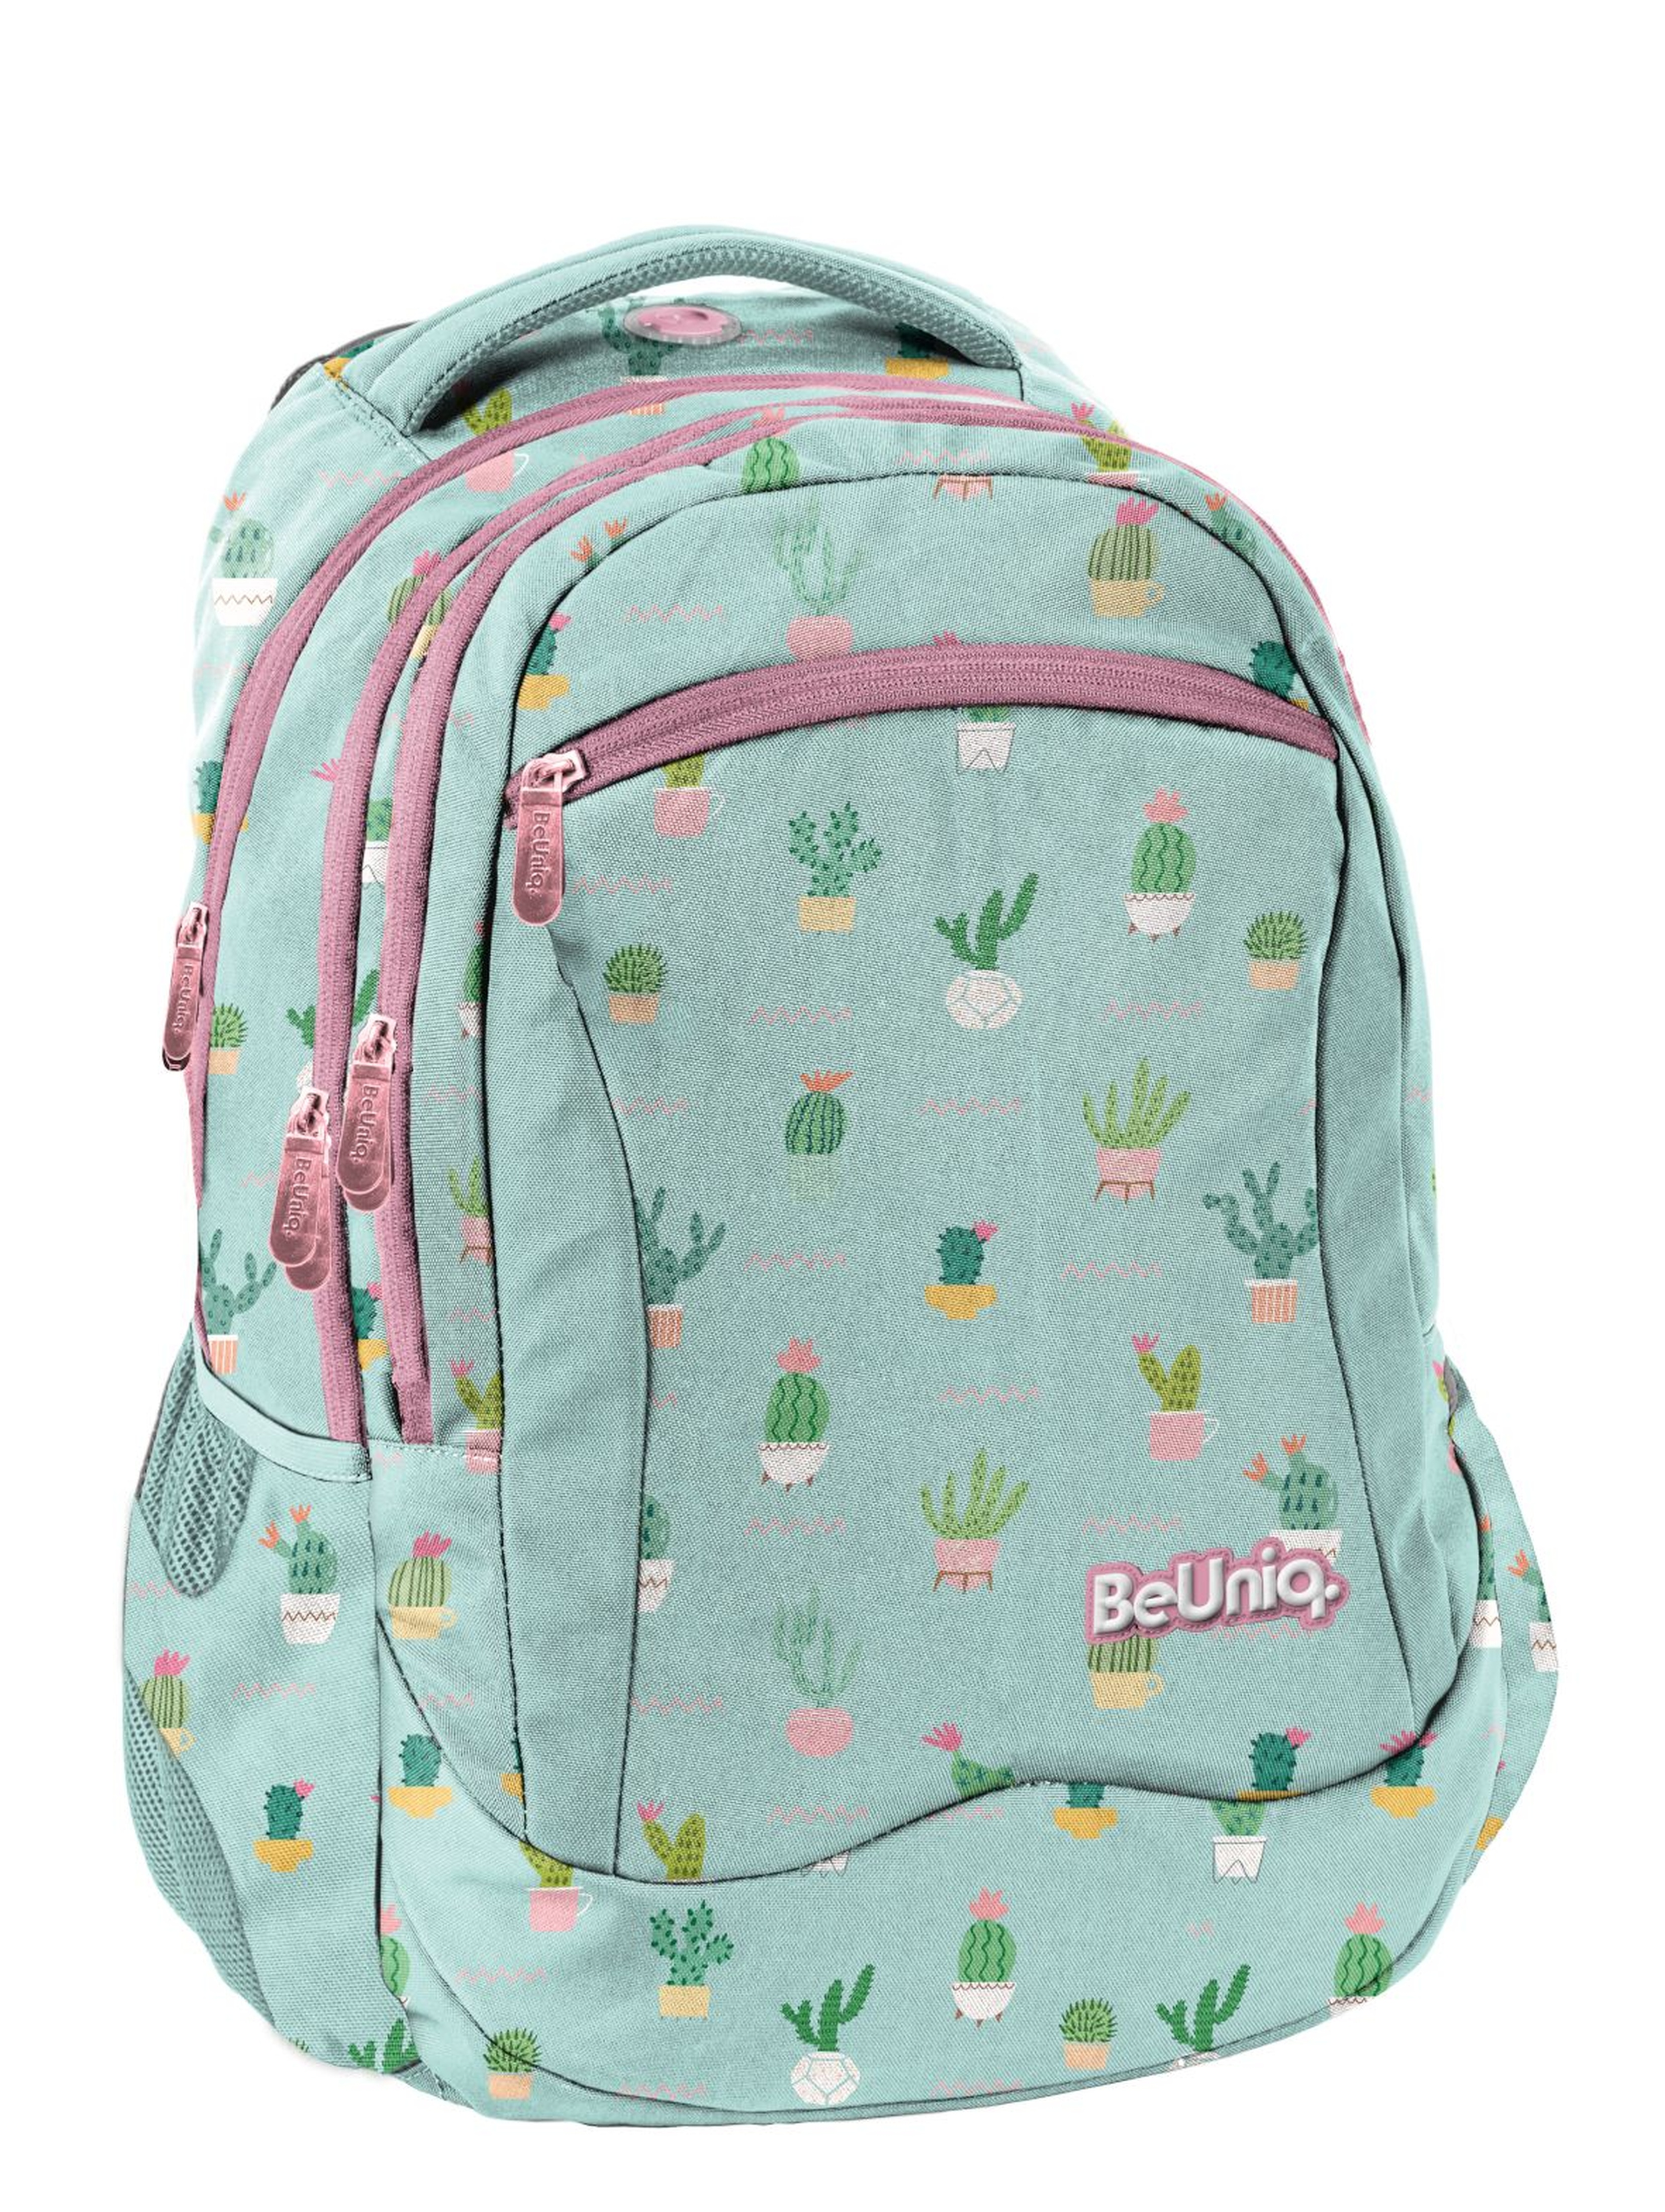 Plecak szkolny dla dziewczynki- niebieski w kaktusy